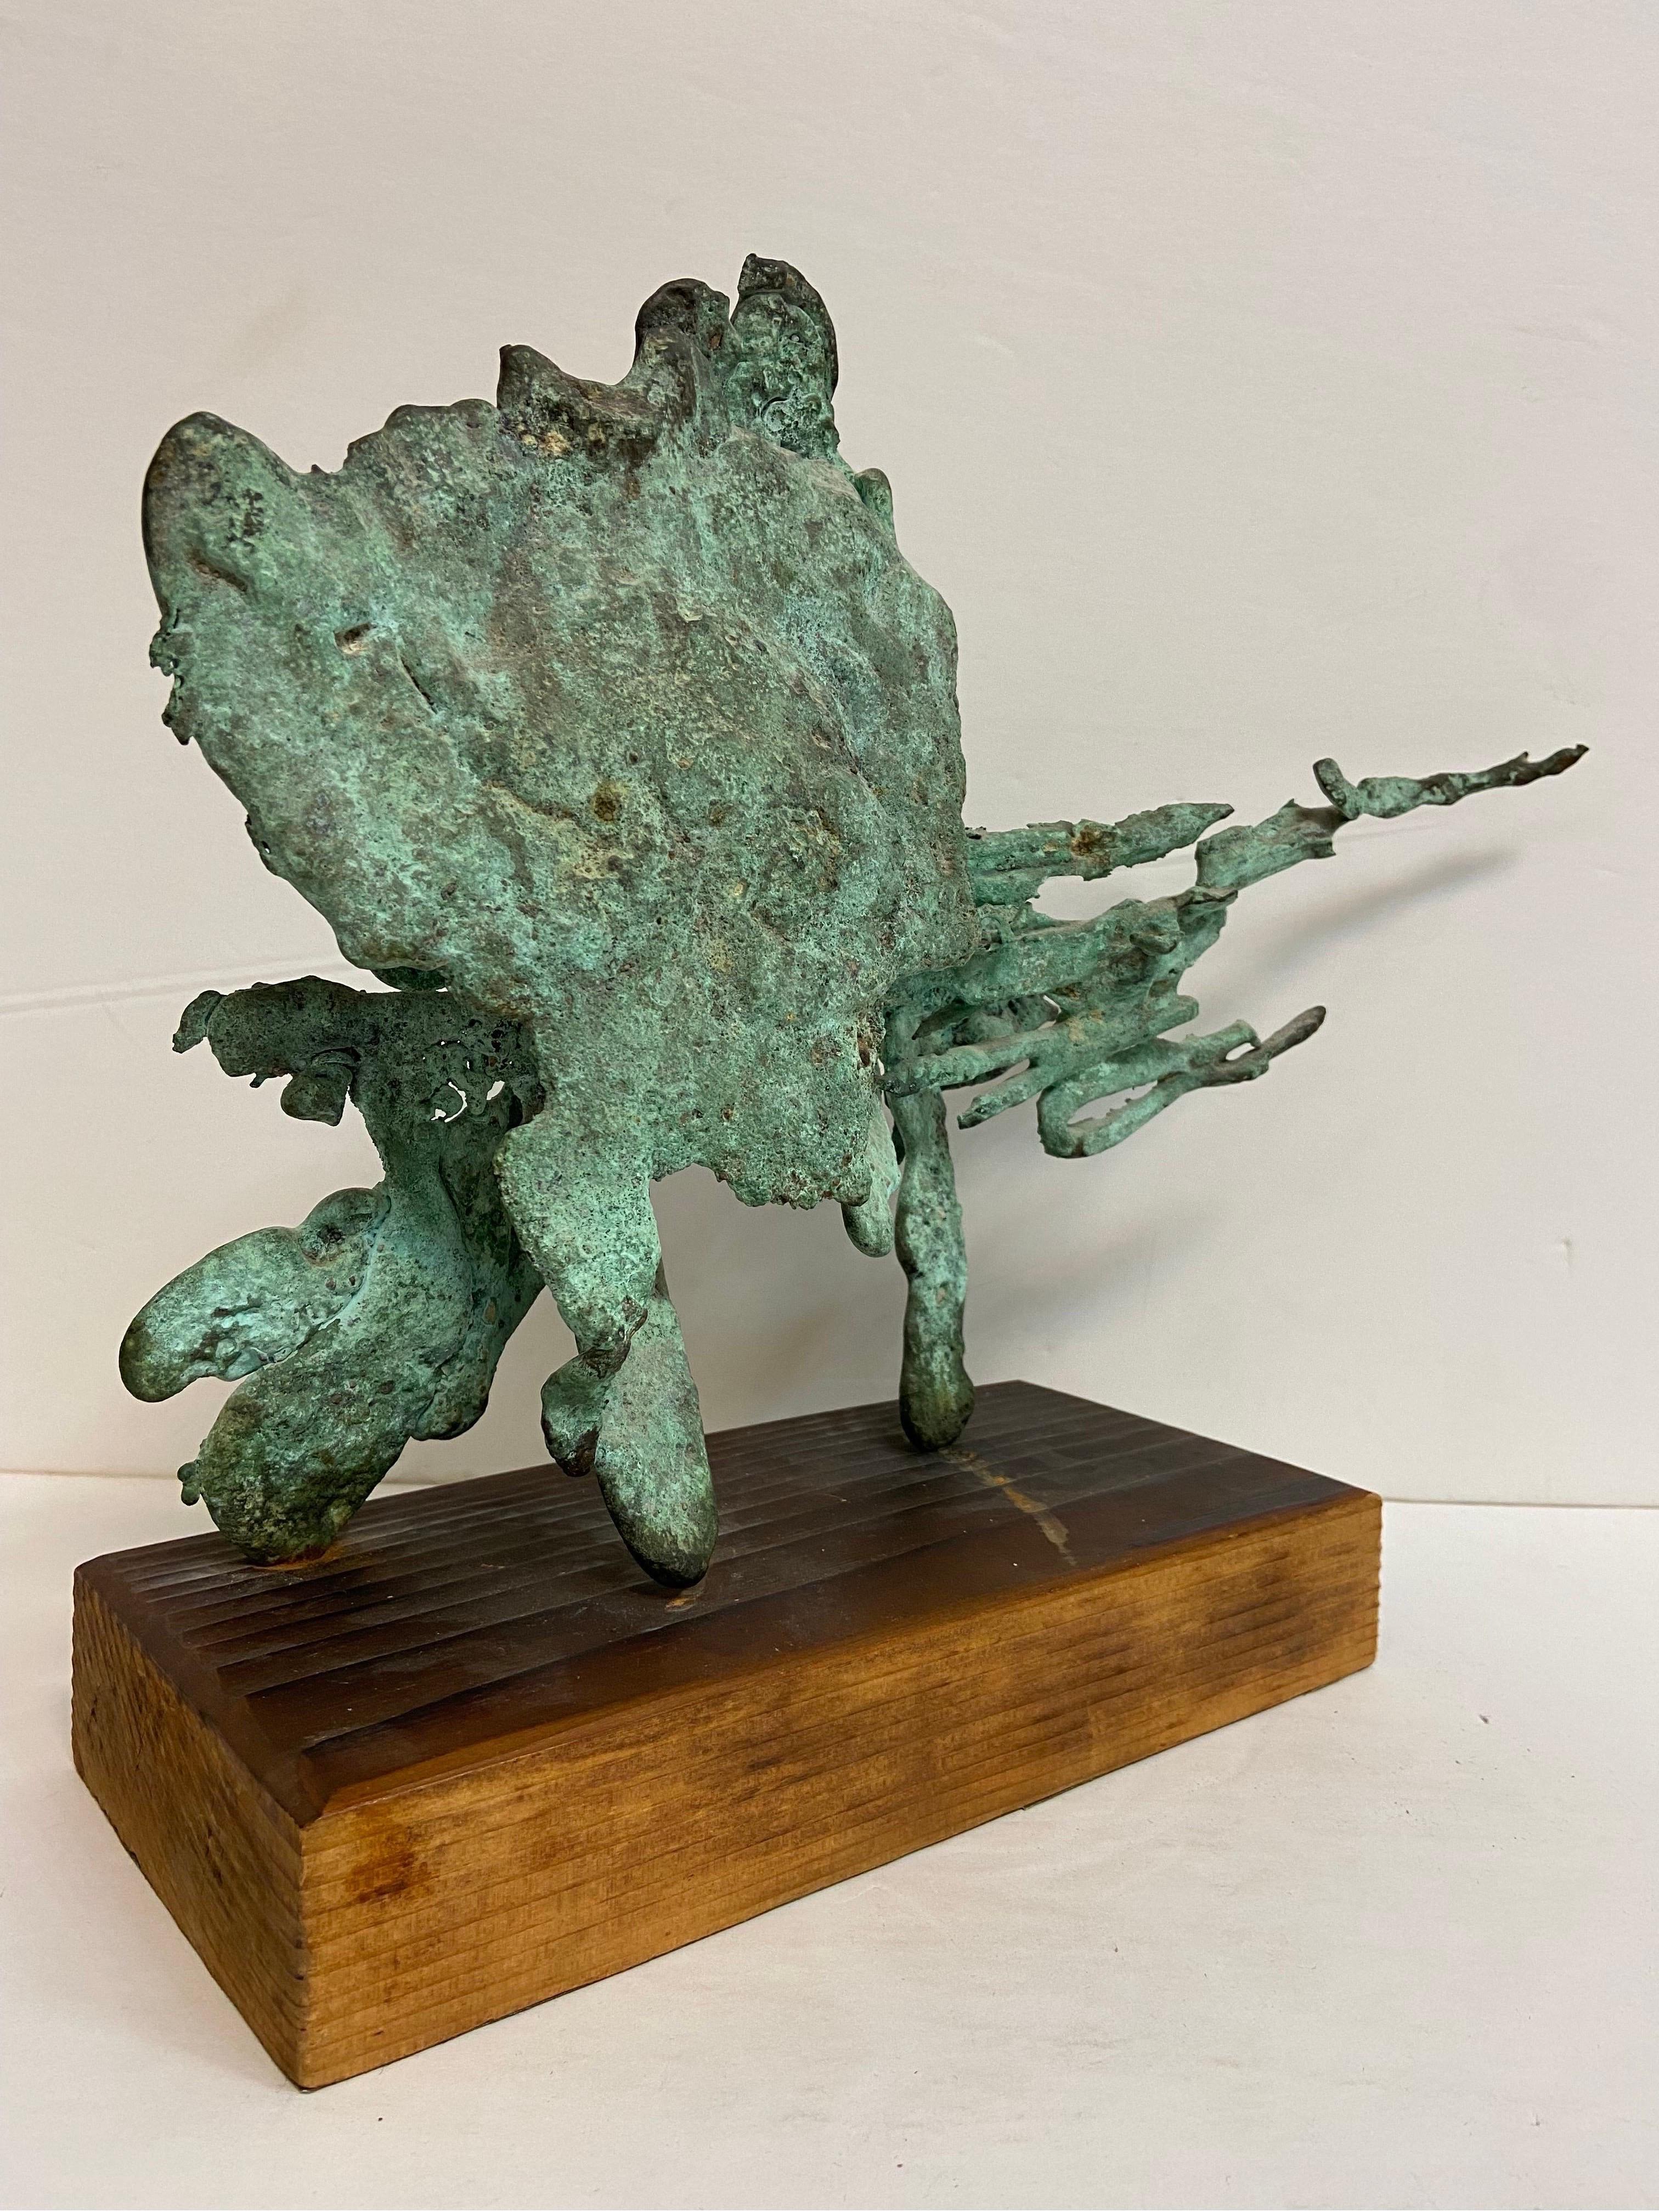 Vintage Verdigris Patina Spill Cast Bronze Brutalist Sculpture on Wood Base 1